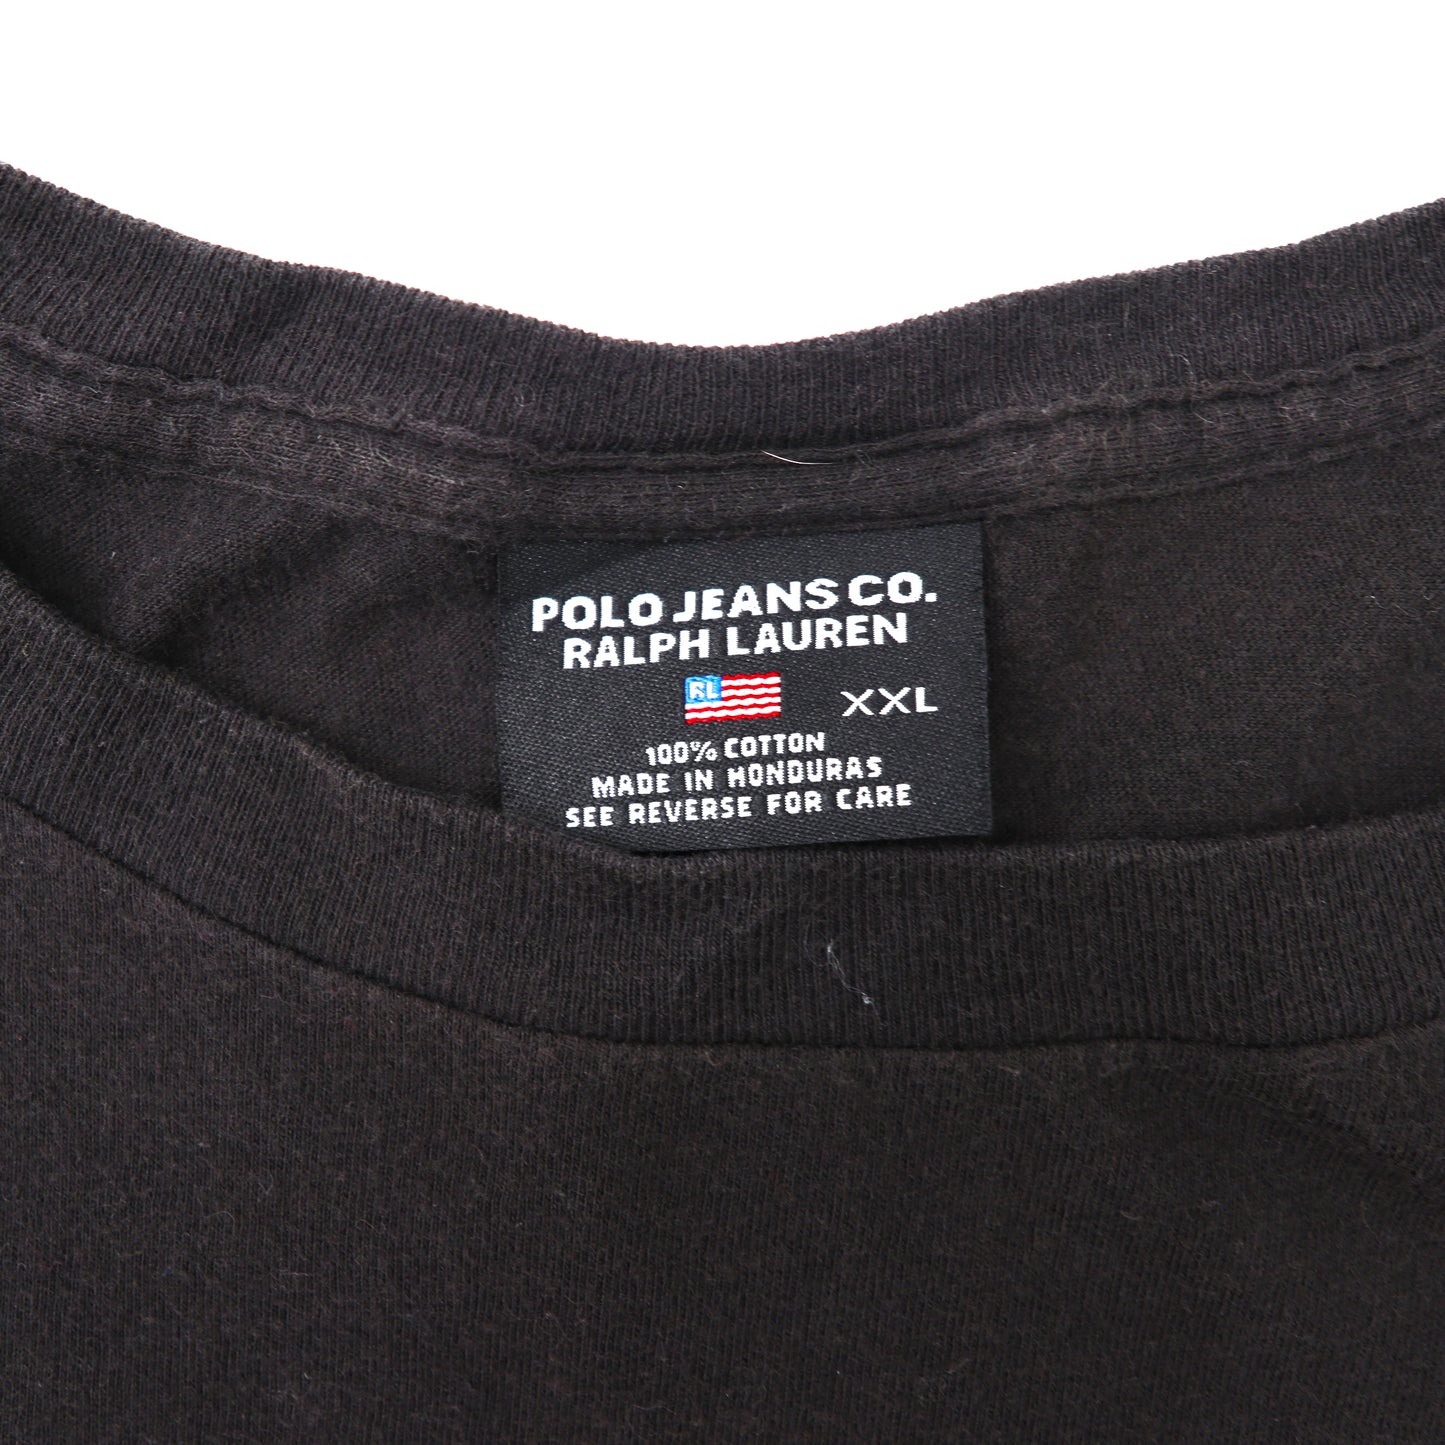 POLO JEANS CO. RALPH LAUREN クルーネックTシャツ XXL ブラック コットン ロゴプリント ビッグサイズ 90年代